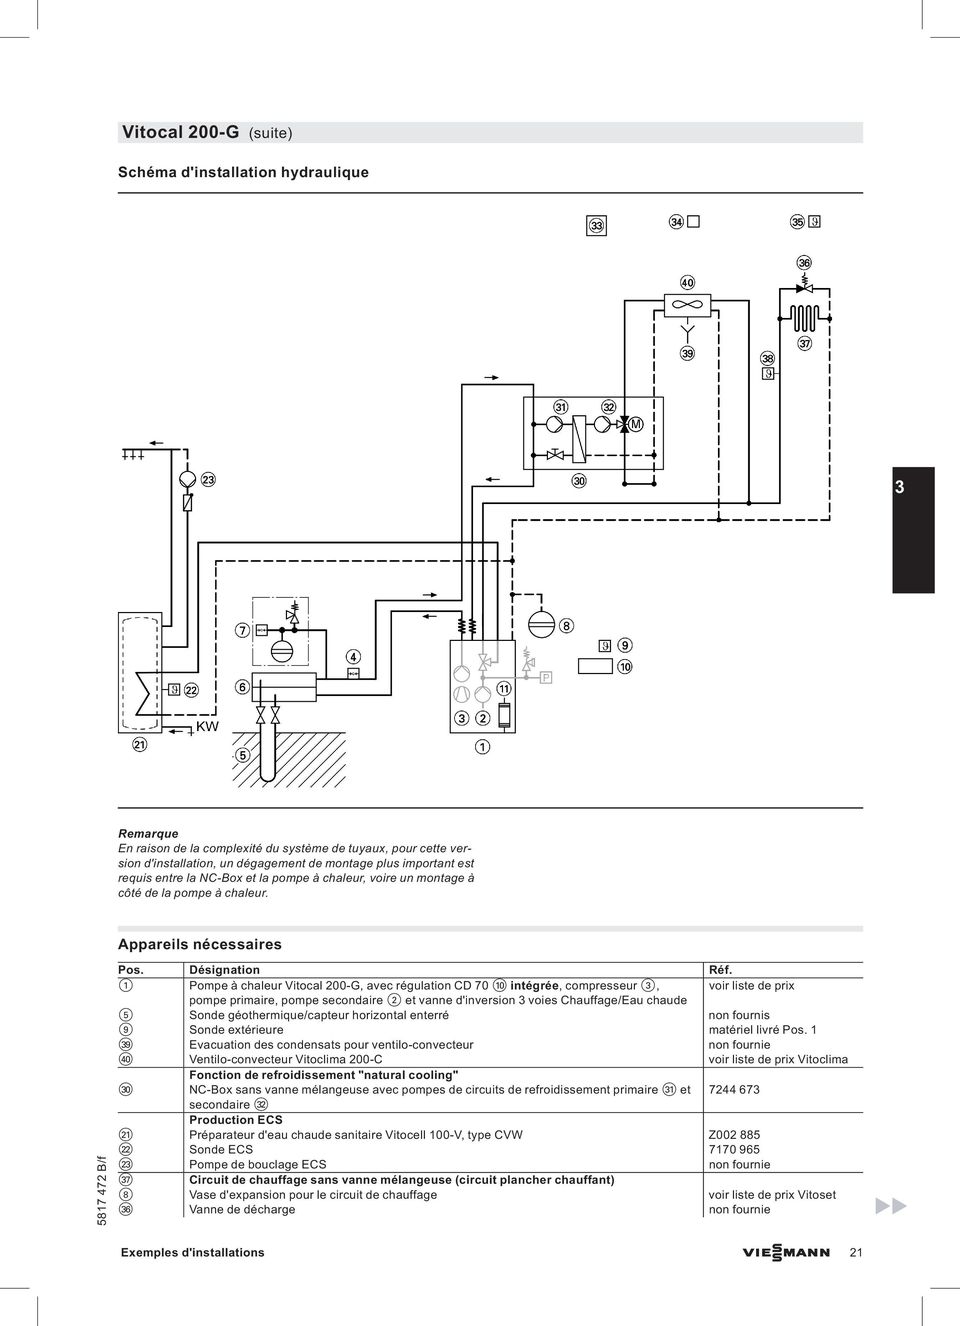 1 Pompe à chaleur Vitocal 200-G, avec régulation CD 70 qp intégrée, compresseur 3, voir liste de prix pompe primaire, pompe secondaire 2 et vanne d'inversion 3 voies Chauffage/Eau chaude 5 Sonde